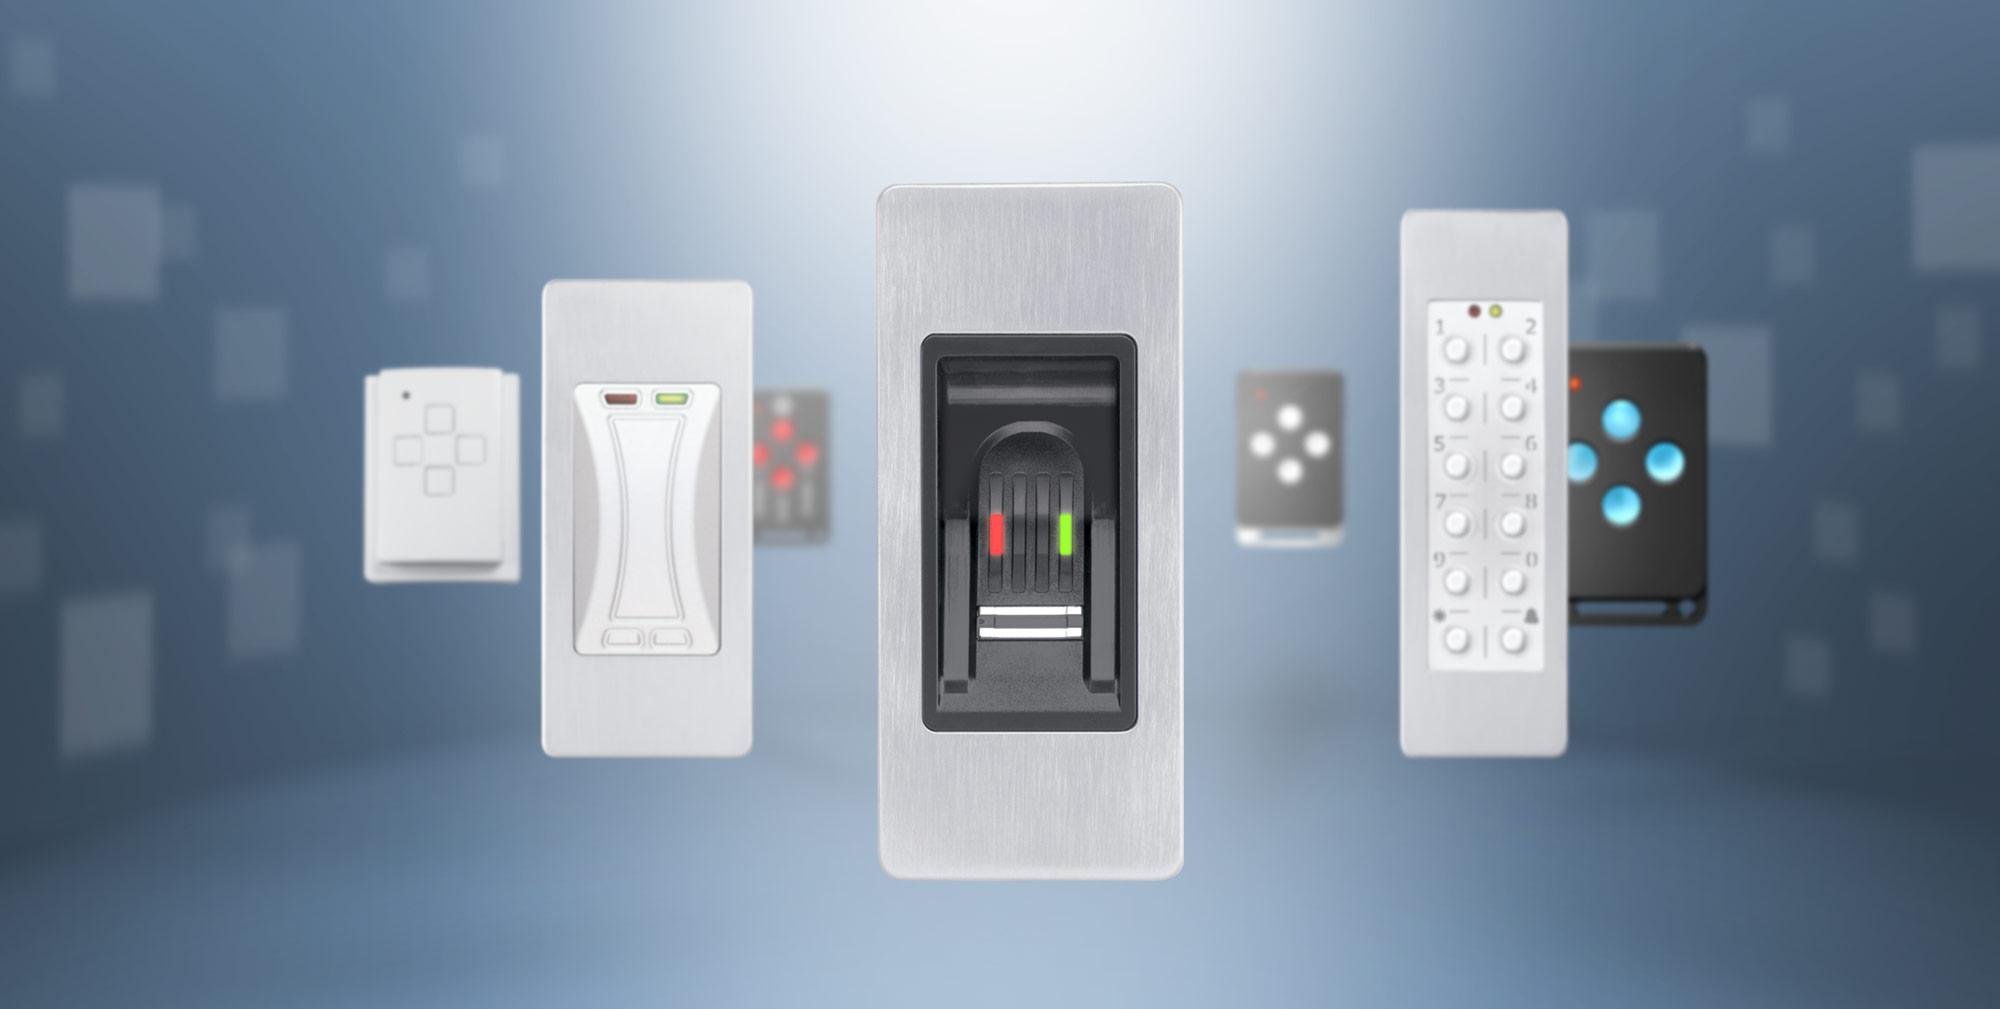 Komfortable Zutrittskontrollsysteme von FUHR als moderne Alternative zur herkömmlichen Türöffnung per Schlüssel: Fingerscan, Tastatur, Transponder oder Funkschlüssel. 